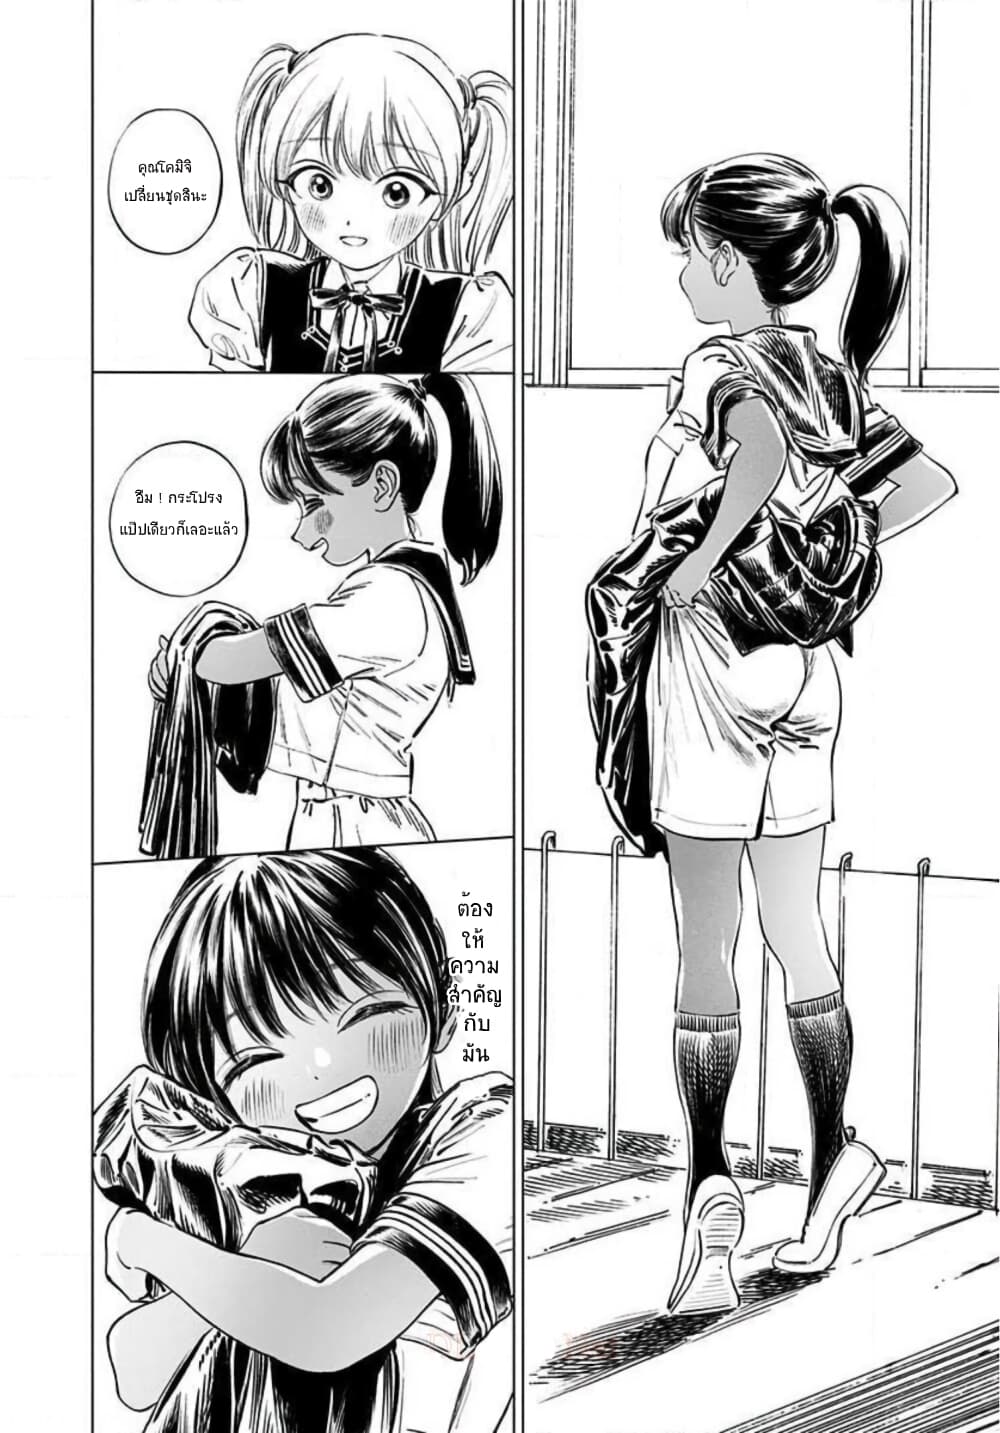 Akebi chan no Sailor Fuku 47 (8)